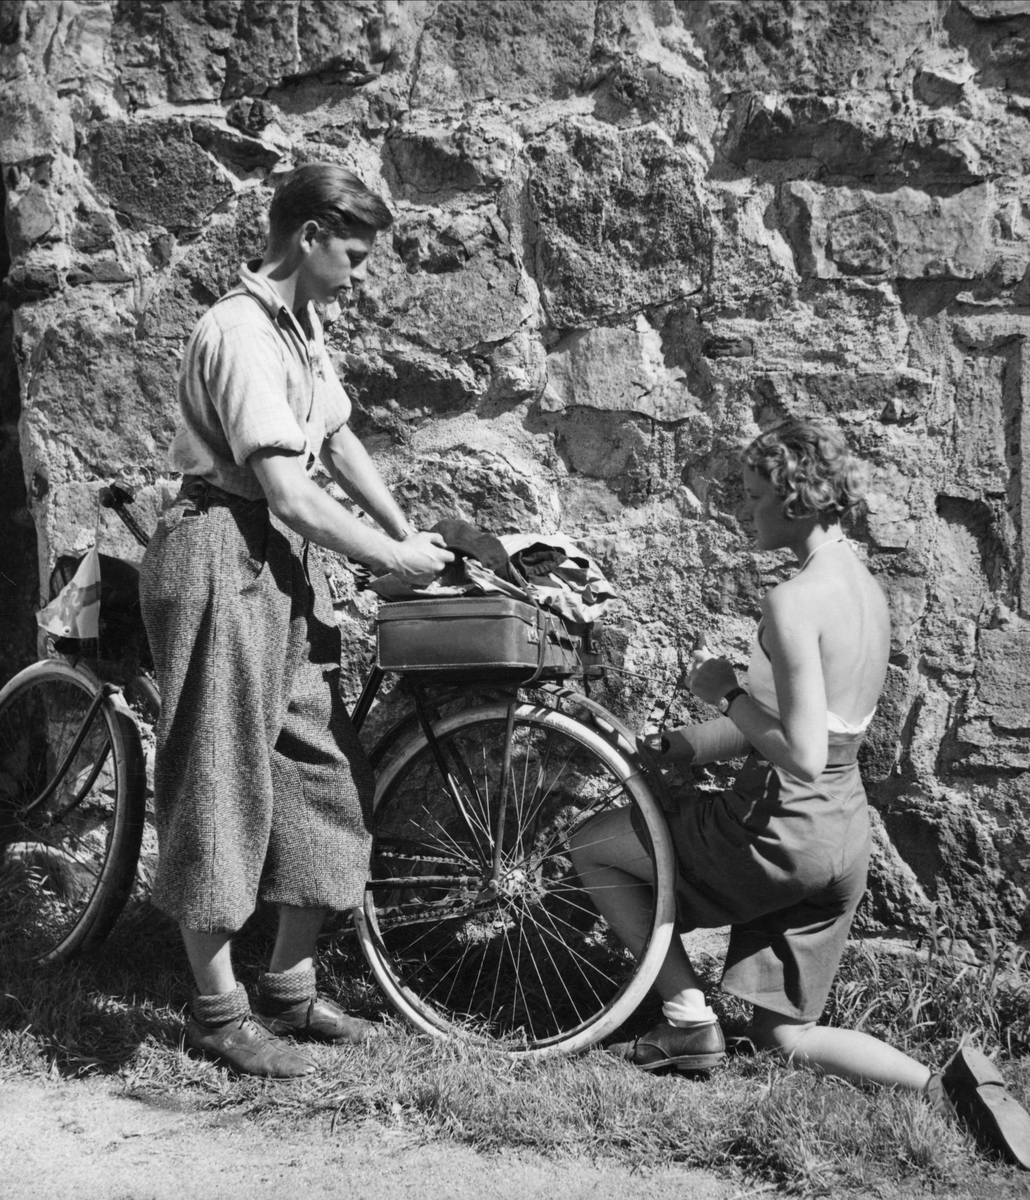 Två cyklister, en ung man och en ung kvinna, har stannat vid en stenmur. han är klädd i vida knäbyxor och skjorta, hon har kortbyxor och ett liv med halterneck.